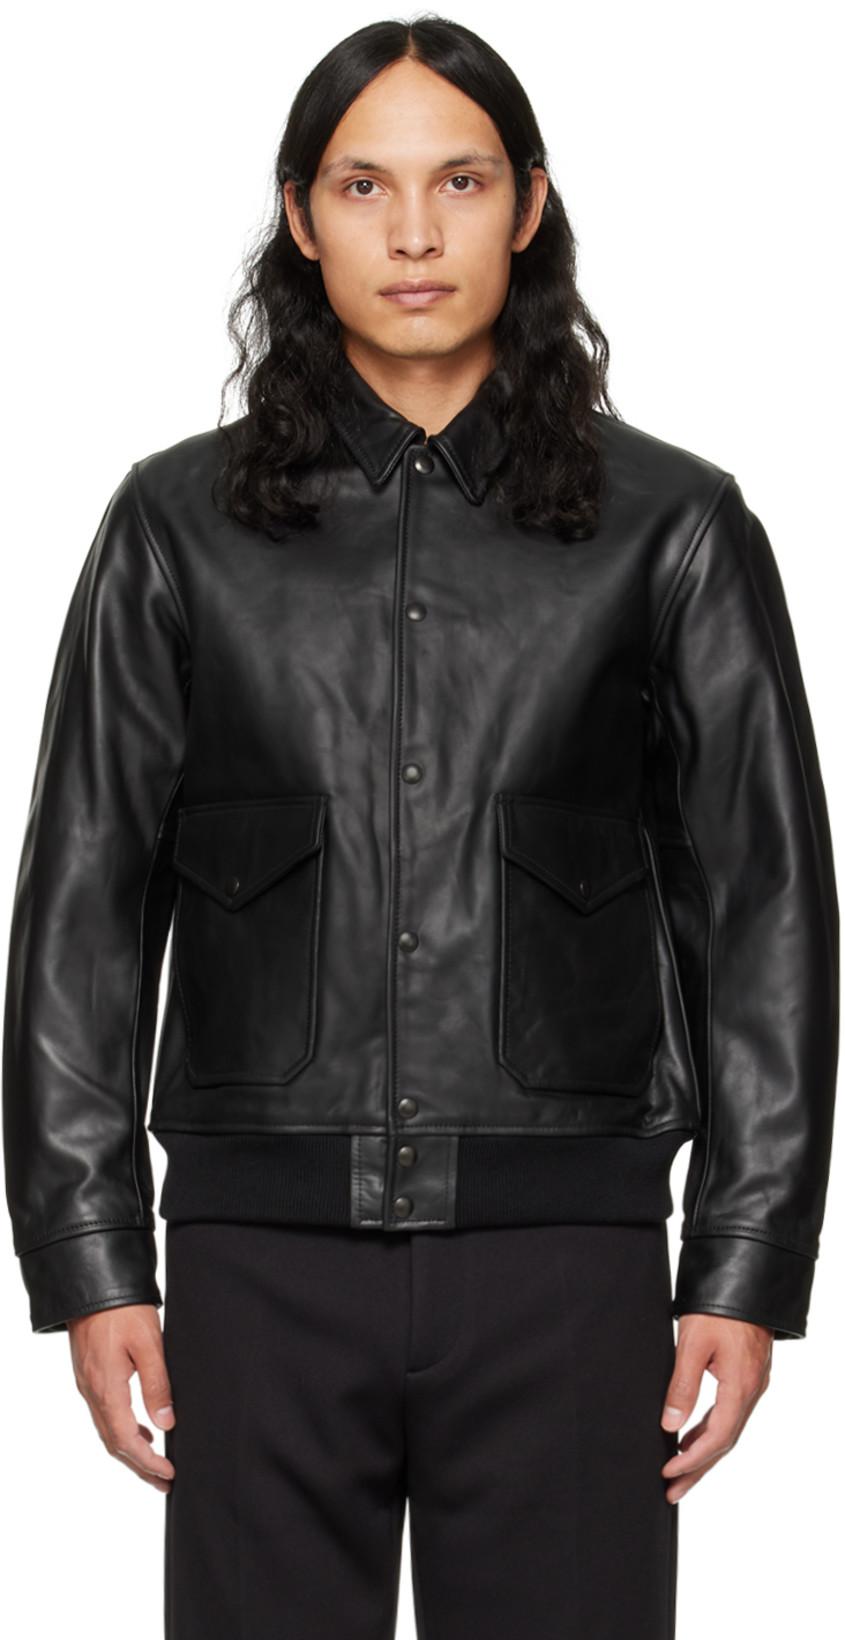 Black Beams Plus Leather Jacket by BEAMS PLUS